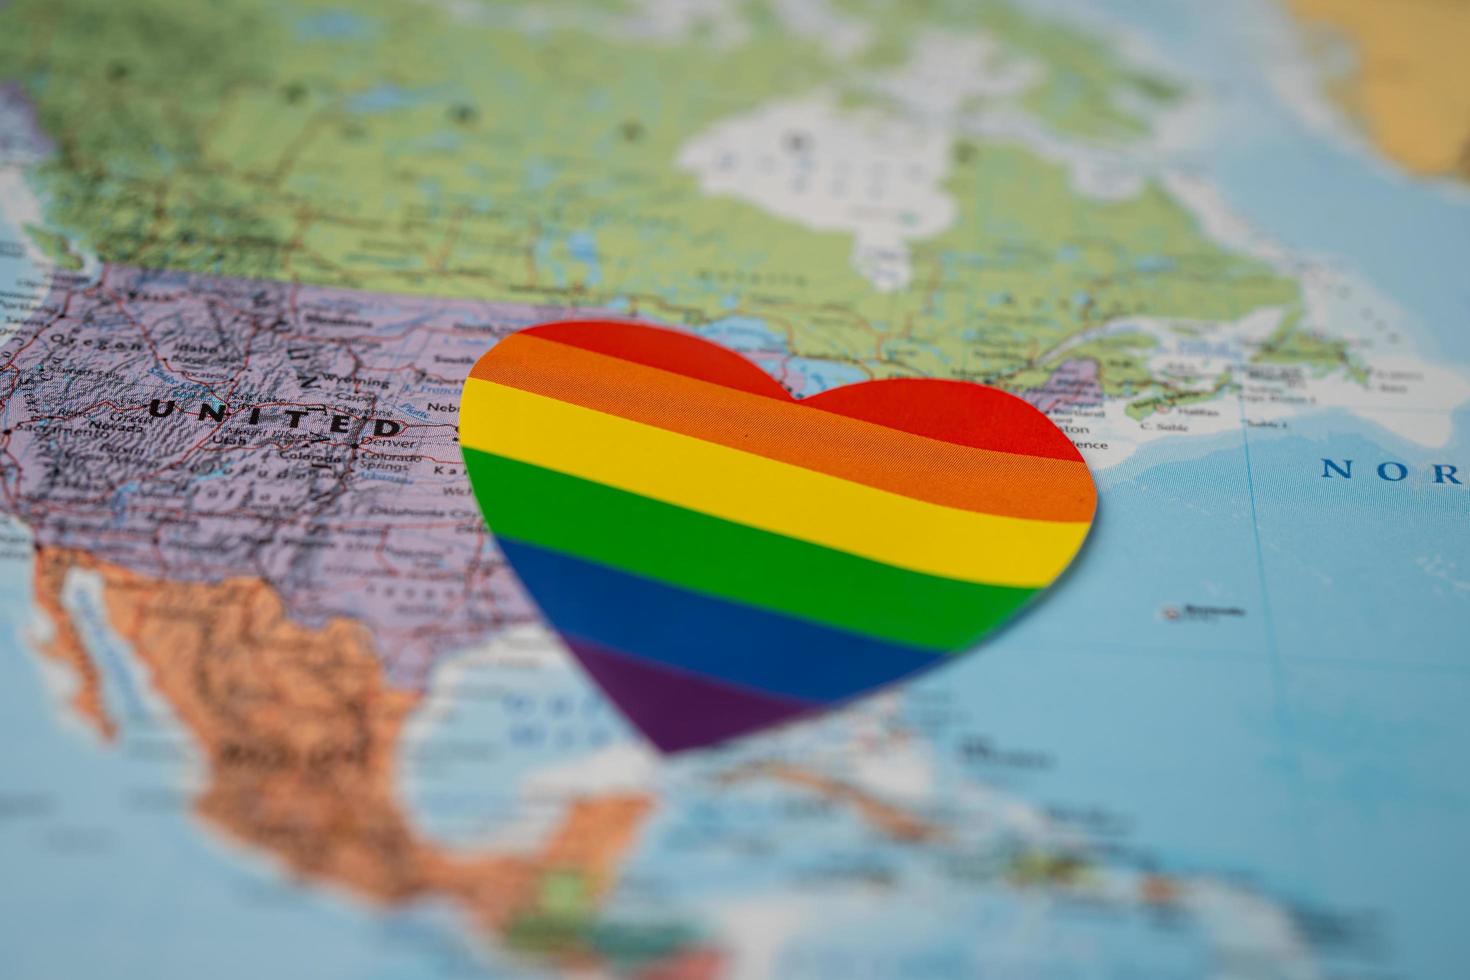 corazón del color del arco iris en el fondo del mapa del mundo del globo de américa, símbolo del mes del orgullo lgbt celebrar anual en junio social, símbolo de gays, lesbianas, gays, bisexuales, transgénero, derechos humanos y paz. foto